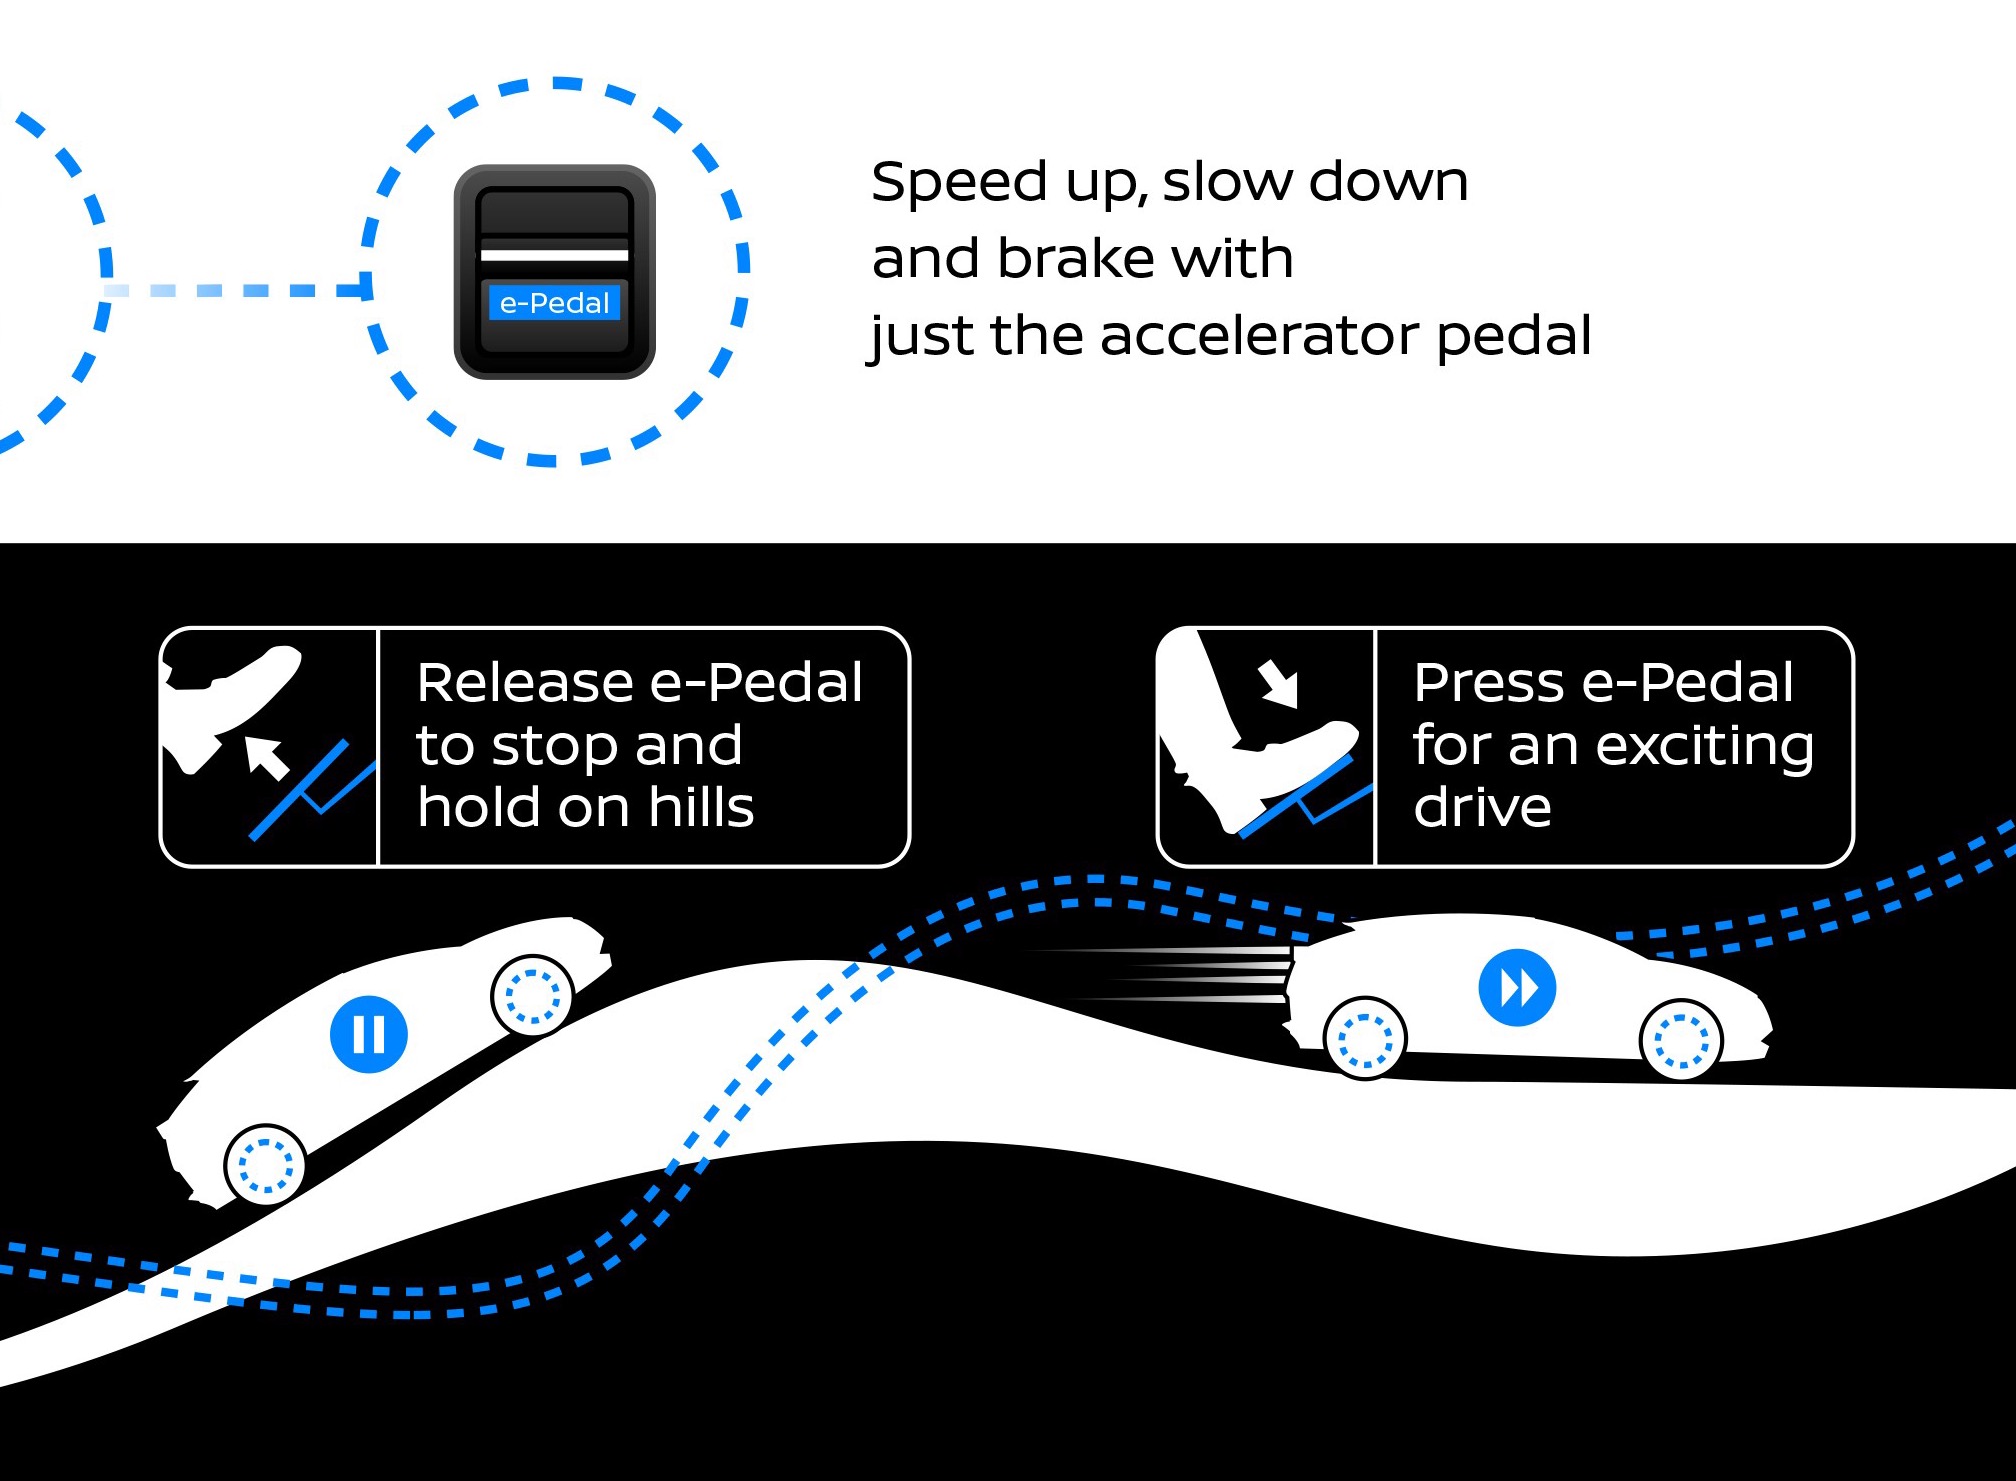 Tek Pedallı Otomobiller Geliyor. Hem gaz hem fren görevi gören e-pedal teknolojisi Nedir?